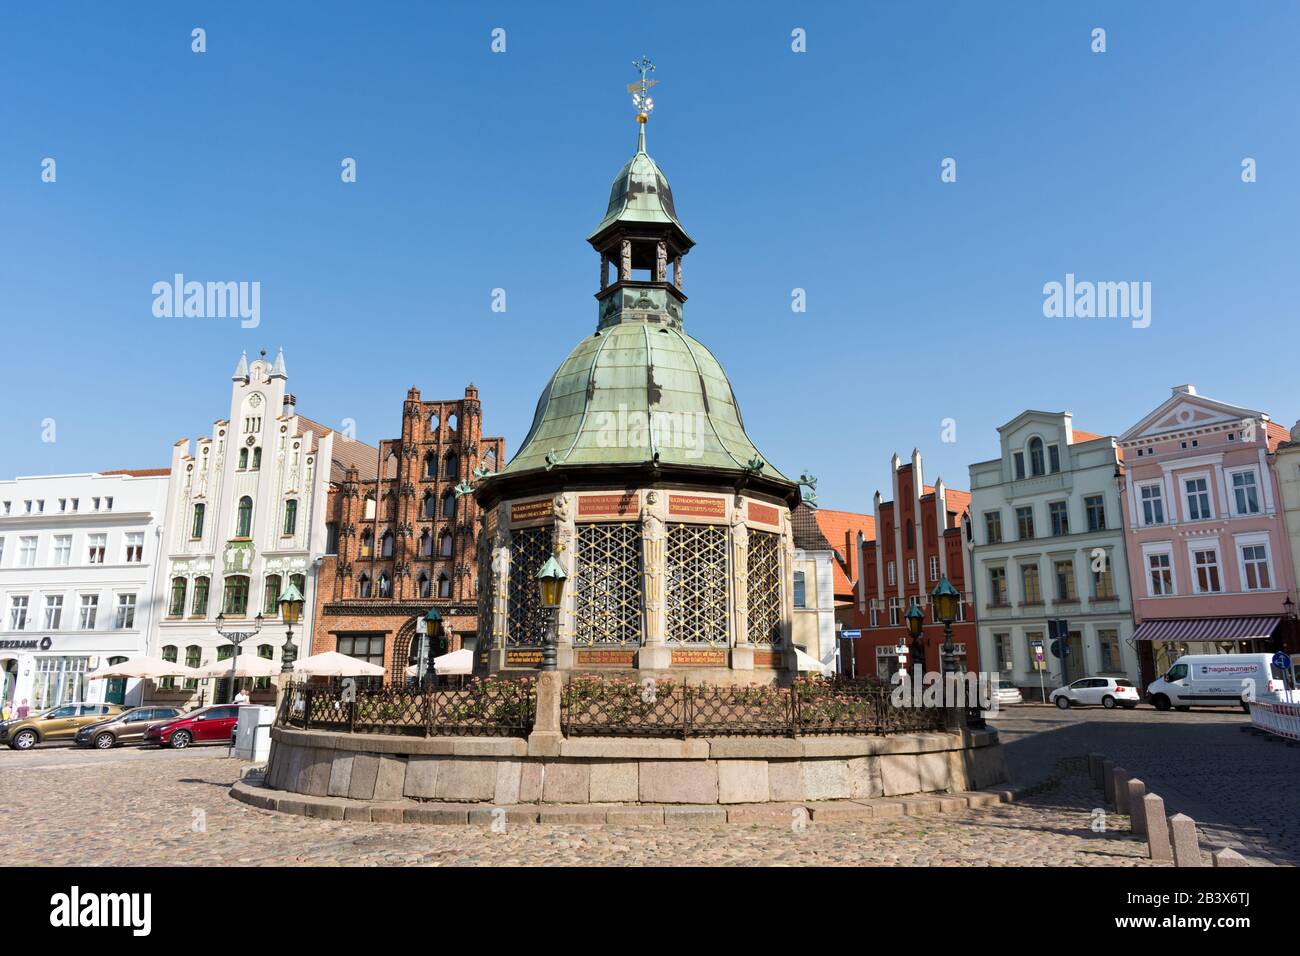 Marktplatz mit dem Wahrzeichen Wasserwerk oder Wasserkunst, Hansestadt Wismar, Mecklenburg-Westvorland, Deutschland, Europa Stockfoto